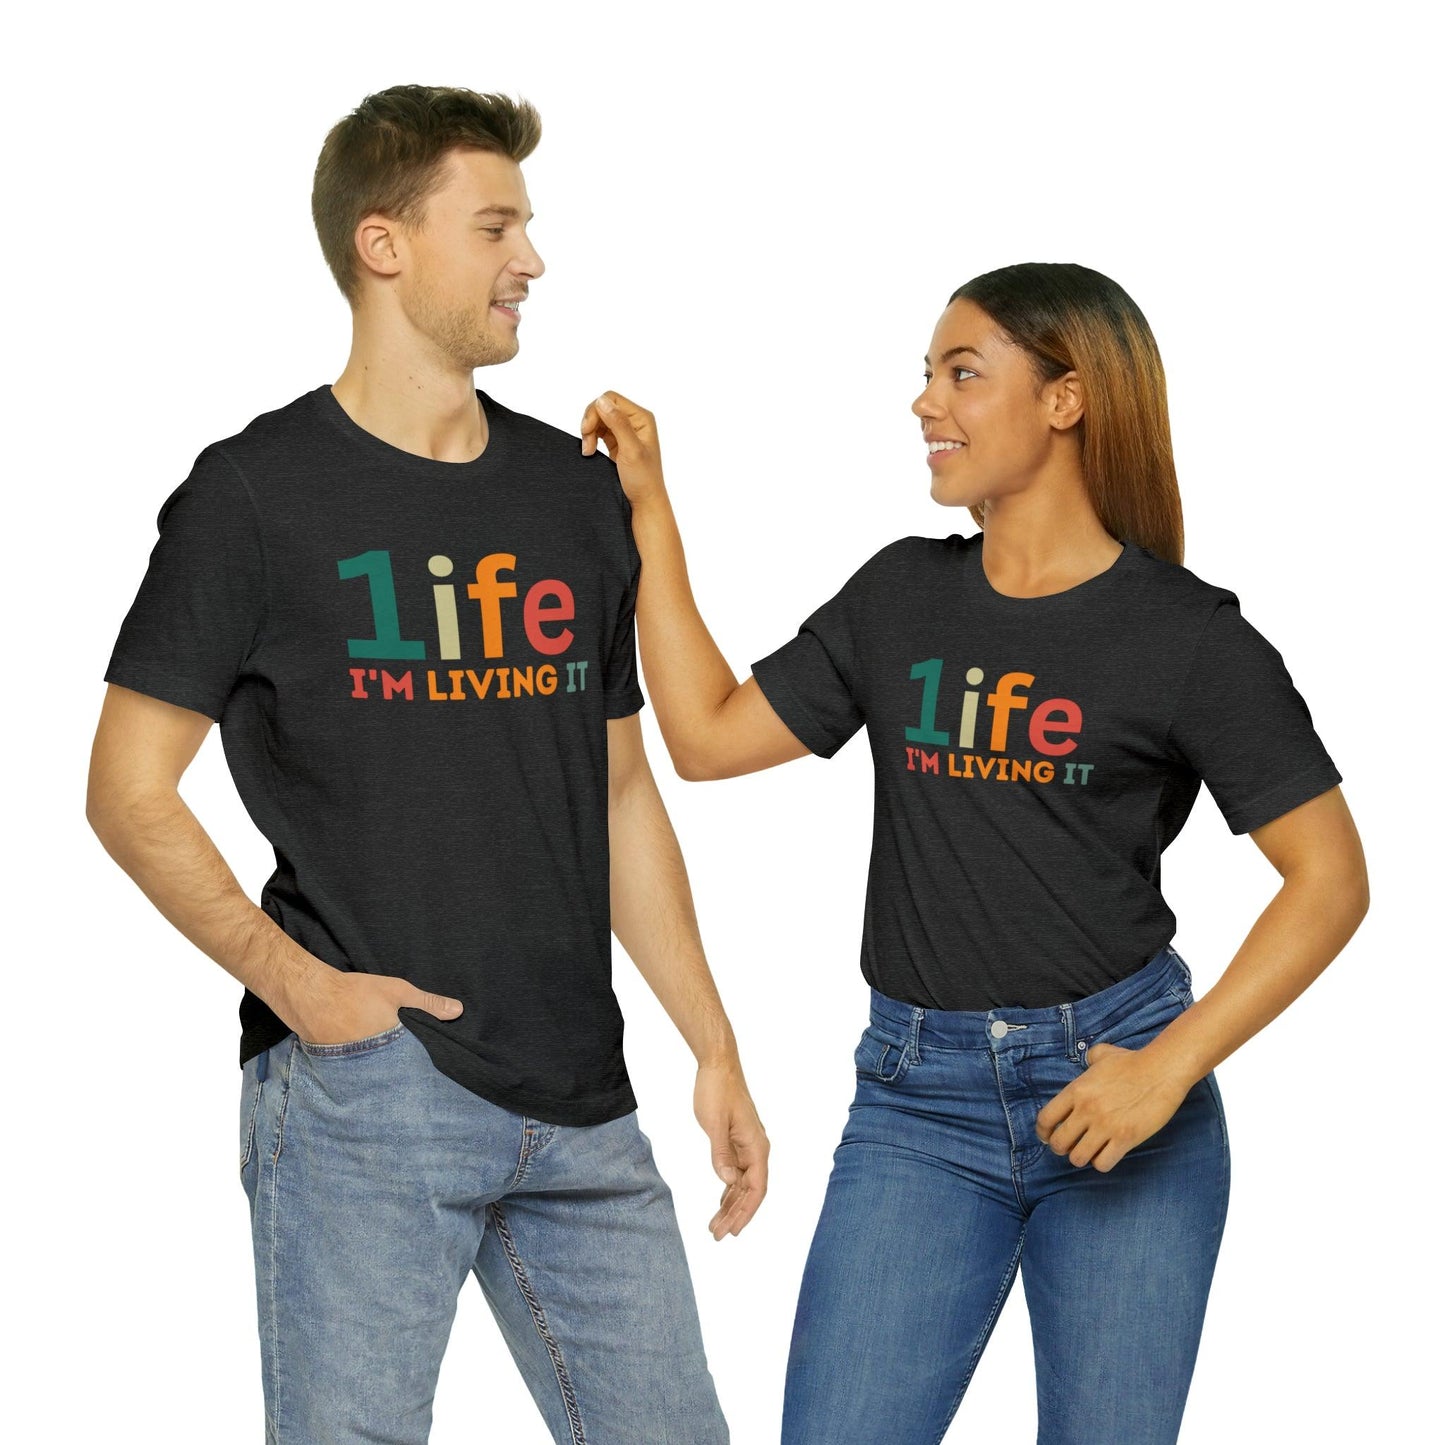 One life Shirt Retro 1life shirt Live Your Life You Only Have One Life To Live Retro Shirt - Giftsmojo